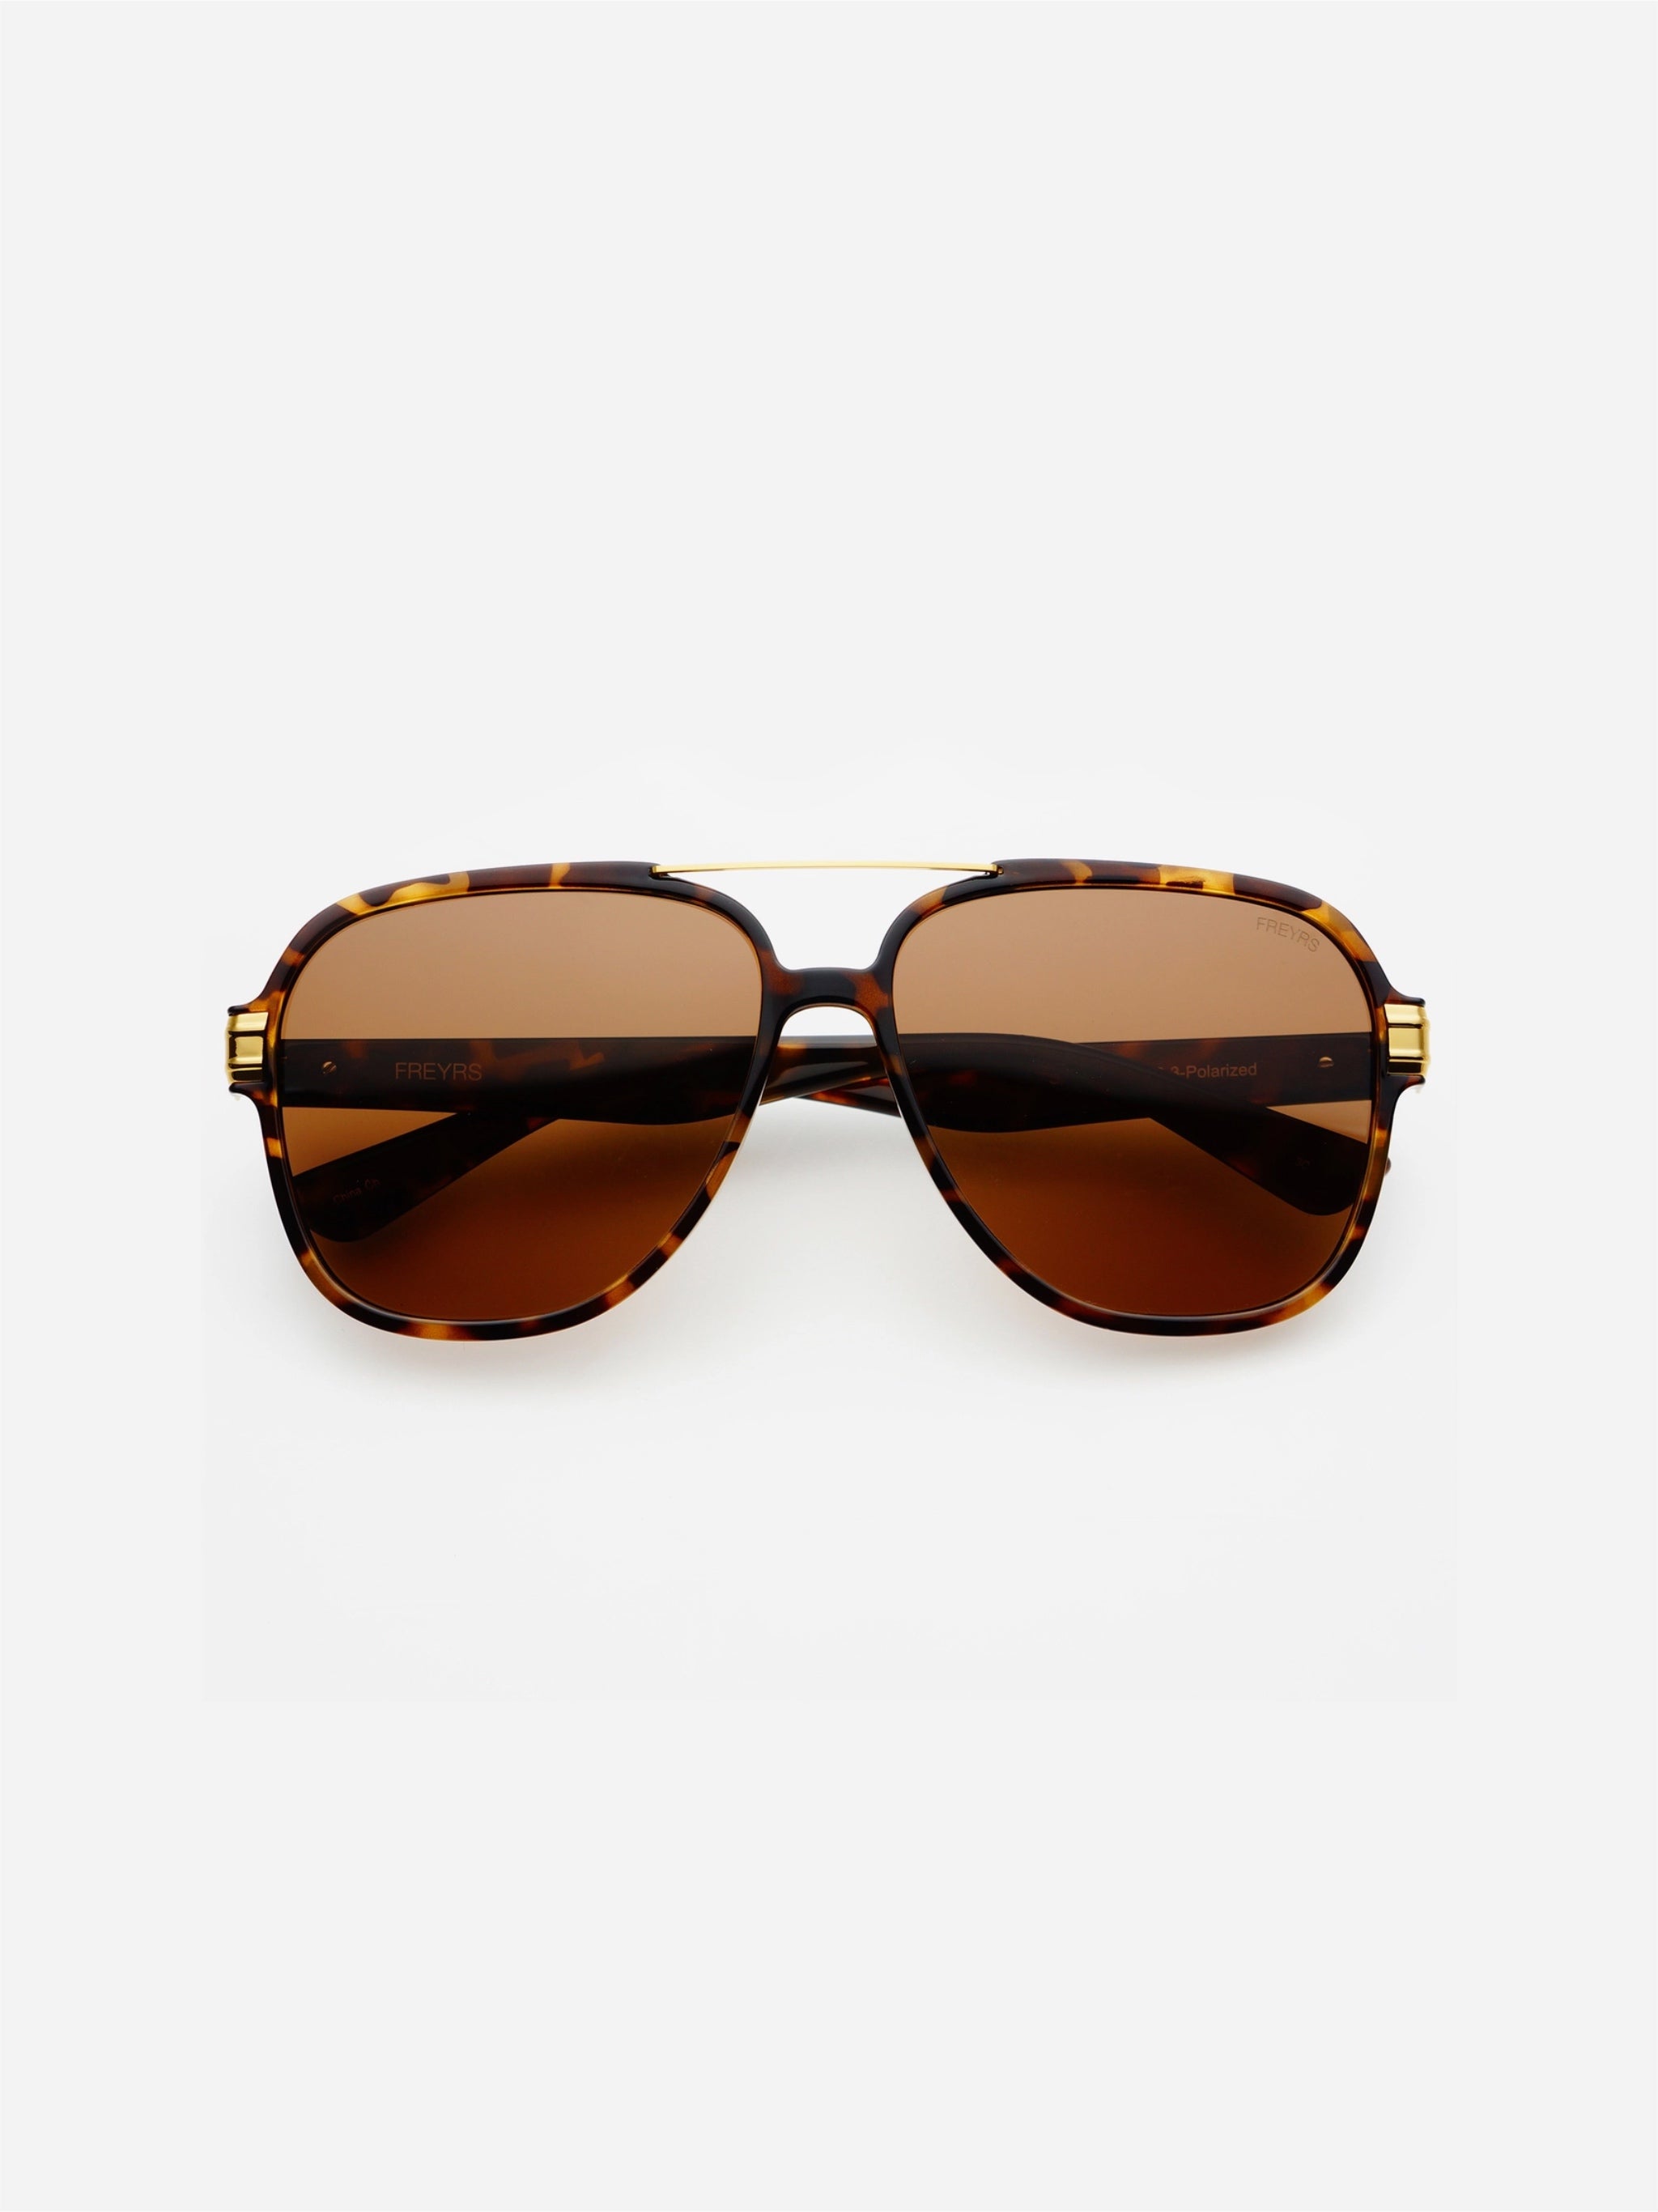 spencer freyrs sunglasses